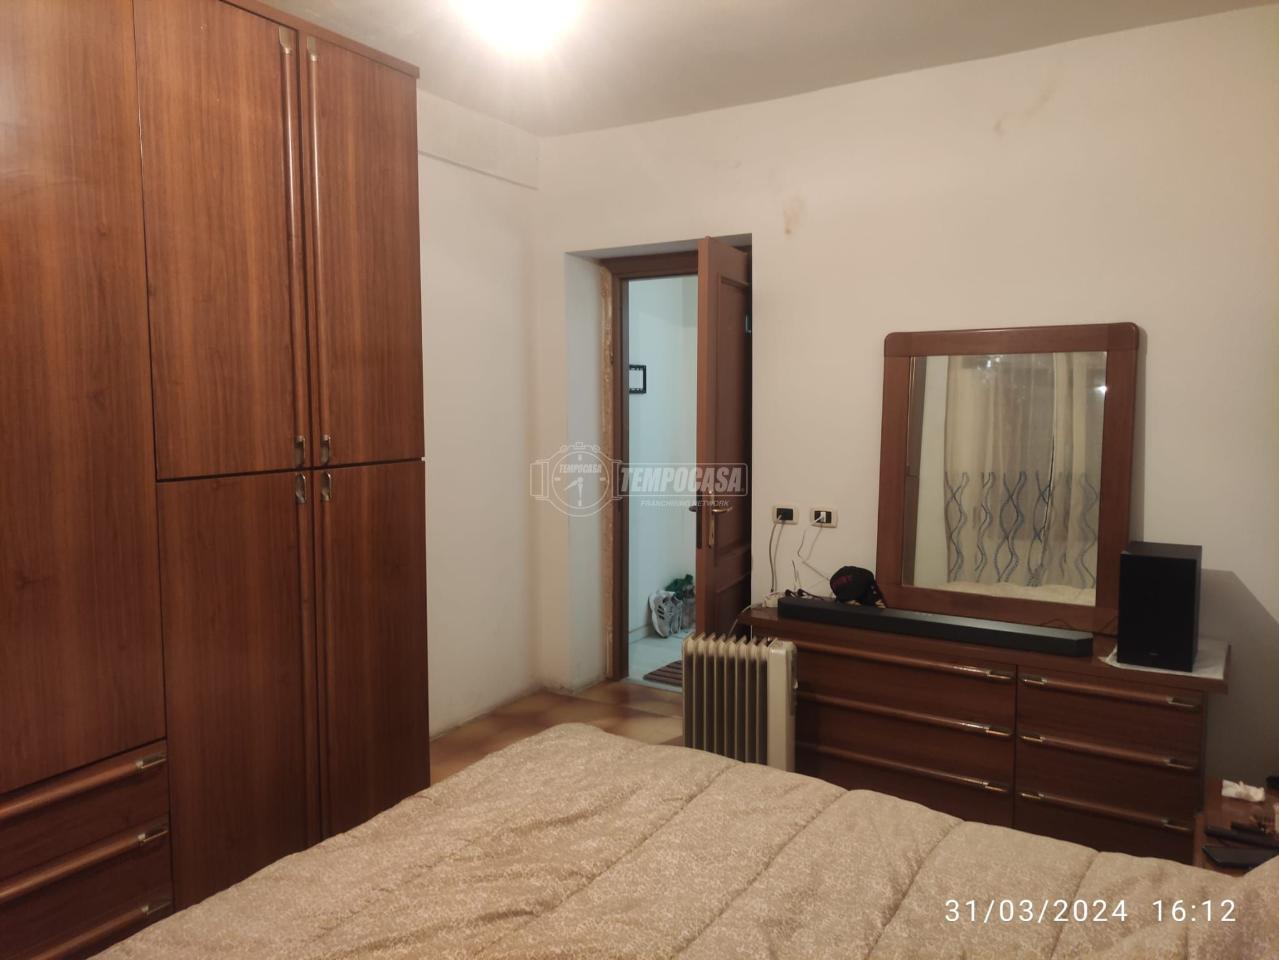 Appartamento in vendita a Vanzaghello